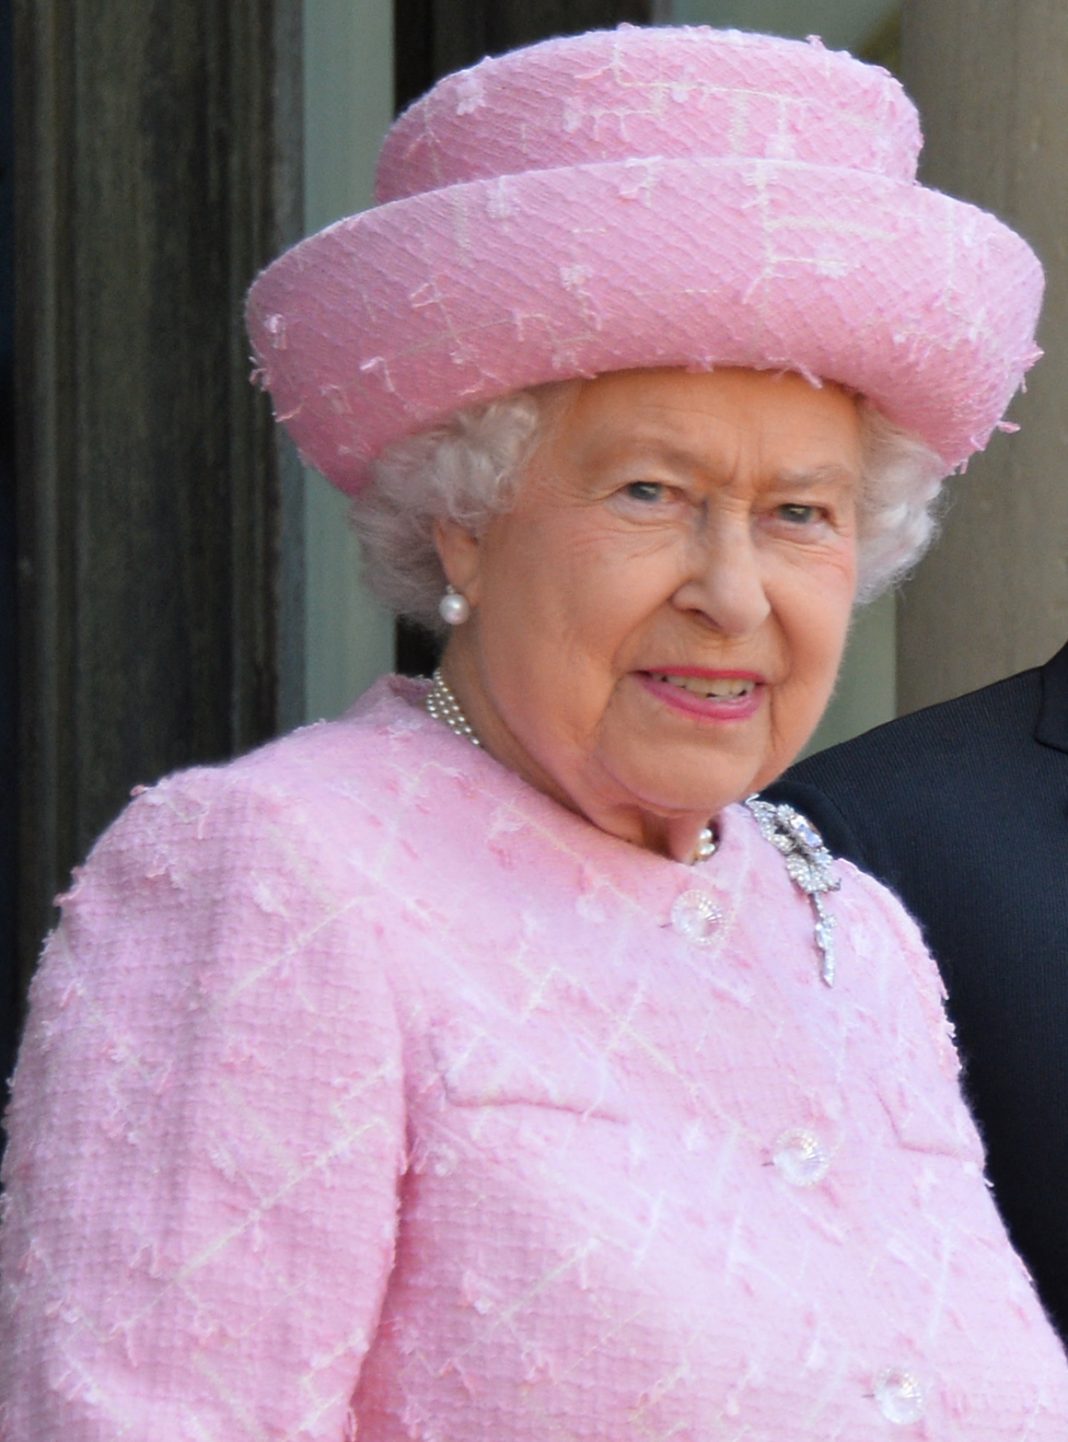 Τα καλά κρυμμένα μυστικά της Βασίλισσας ελισάβετ που μόνο το παλάτι γνωρίζουν